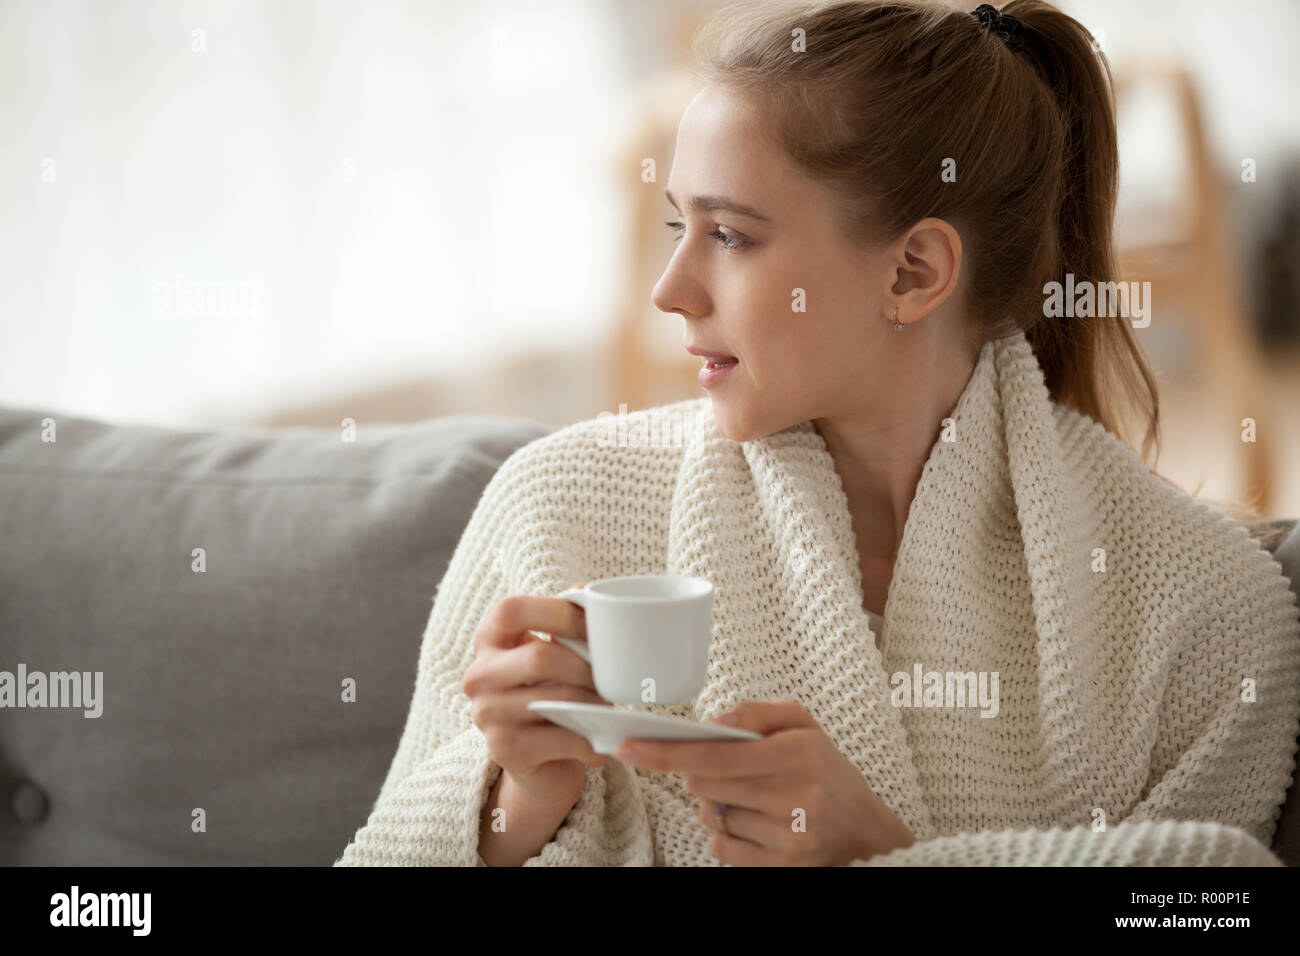 Attractive Woman sitting on couch tenir tasse de café Banque D'Images